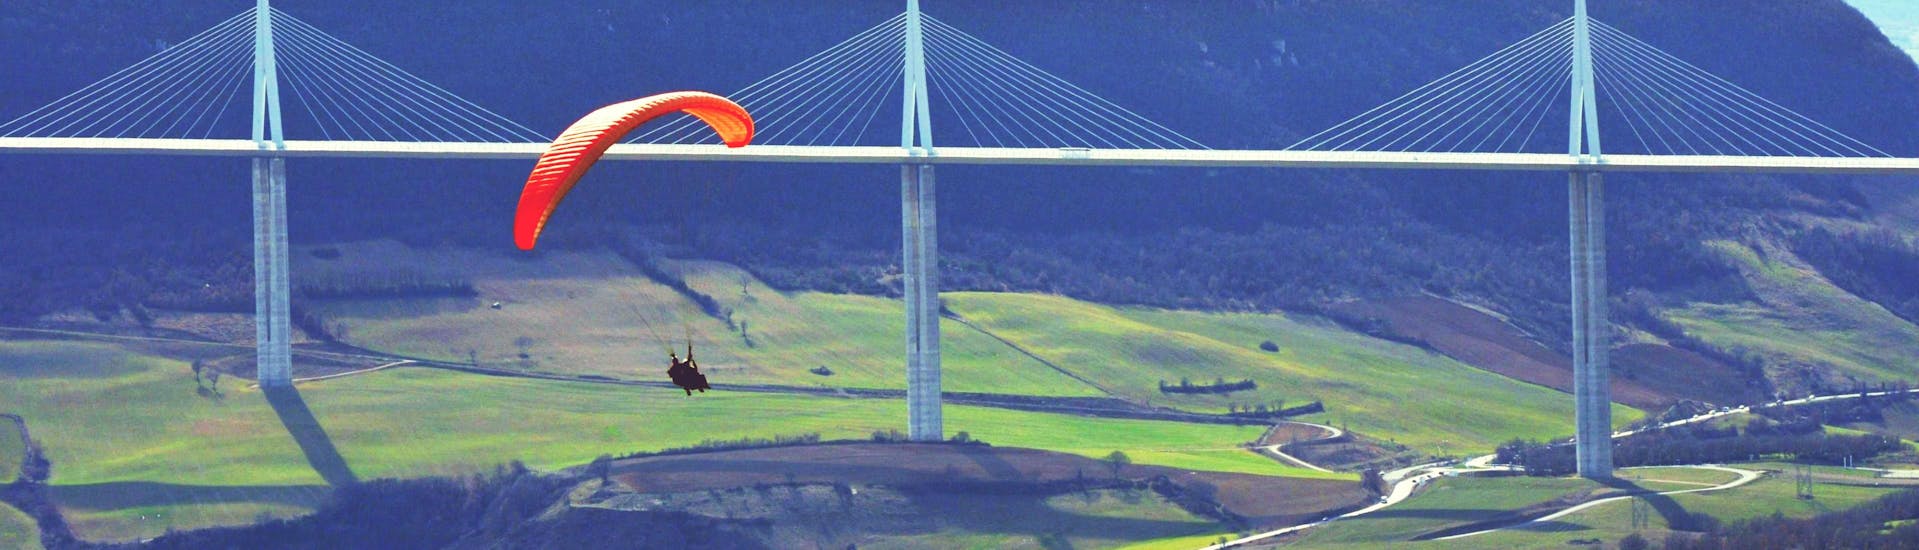 Thermik Tandem Paragliding in Millau (ab 4 J.) - Parc naturel régional des Grands Causses.